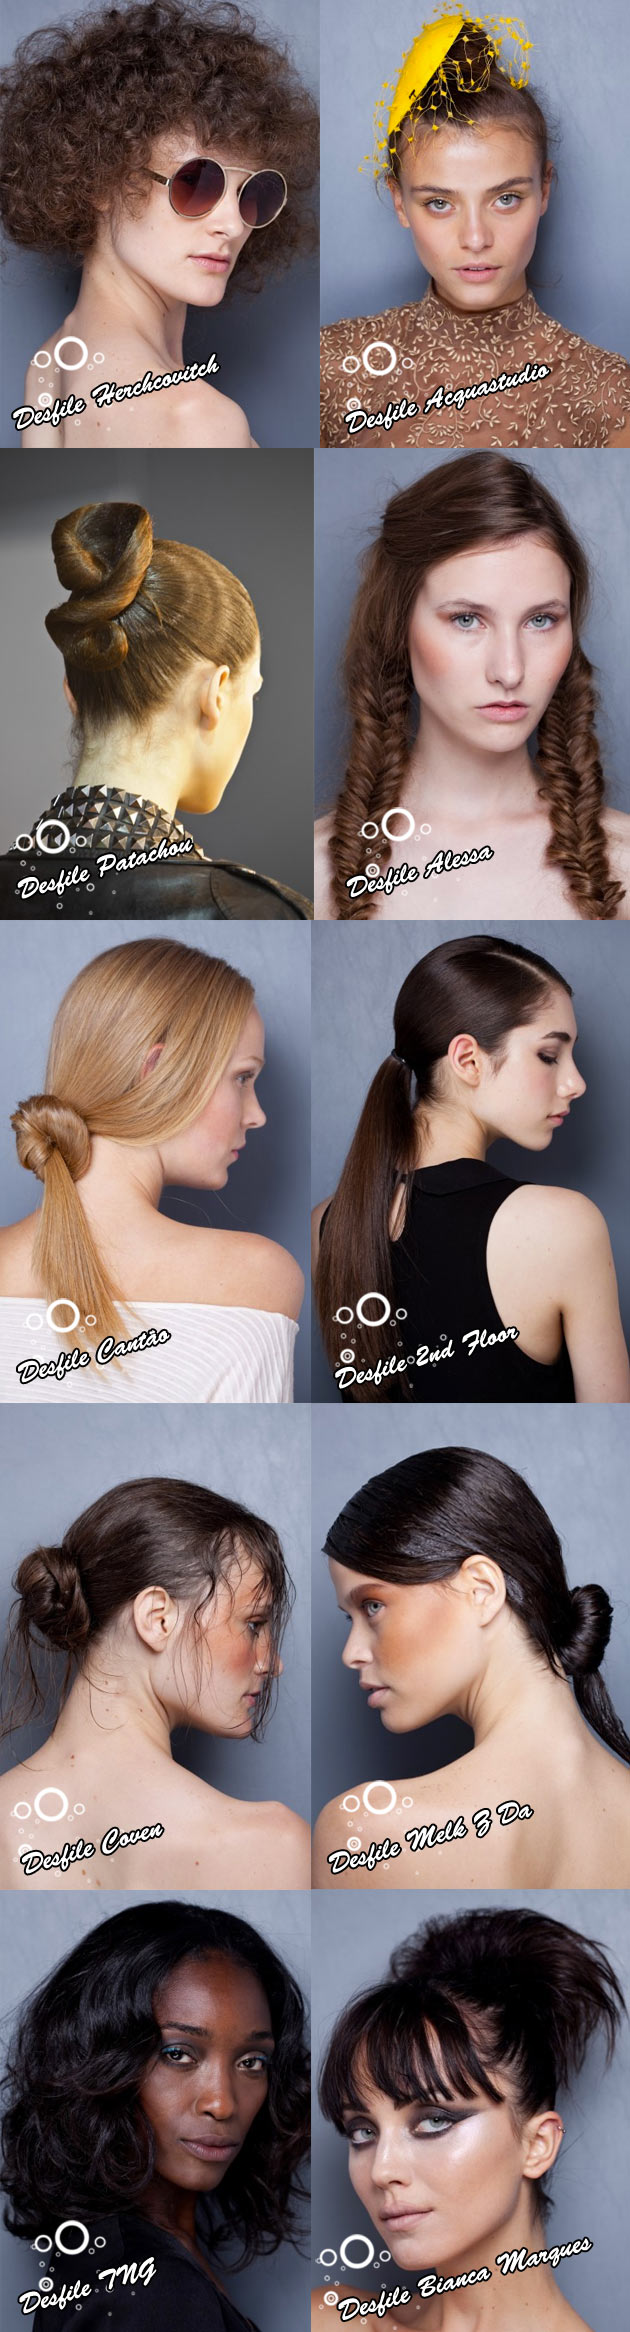 penteados1 #FashionRio   Cabelo